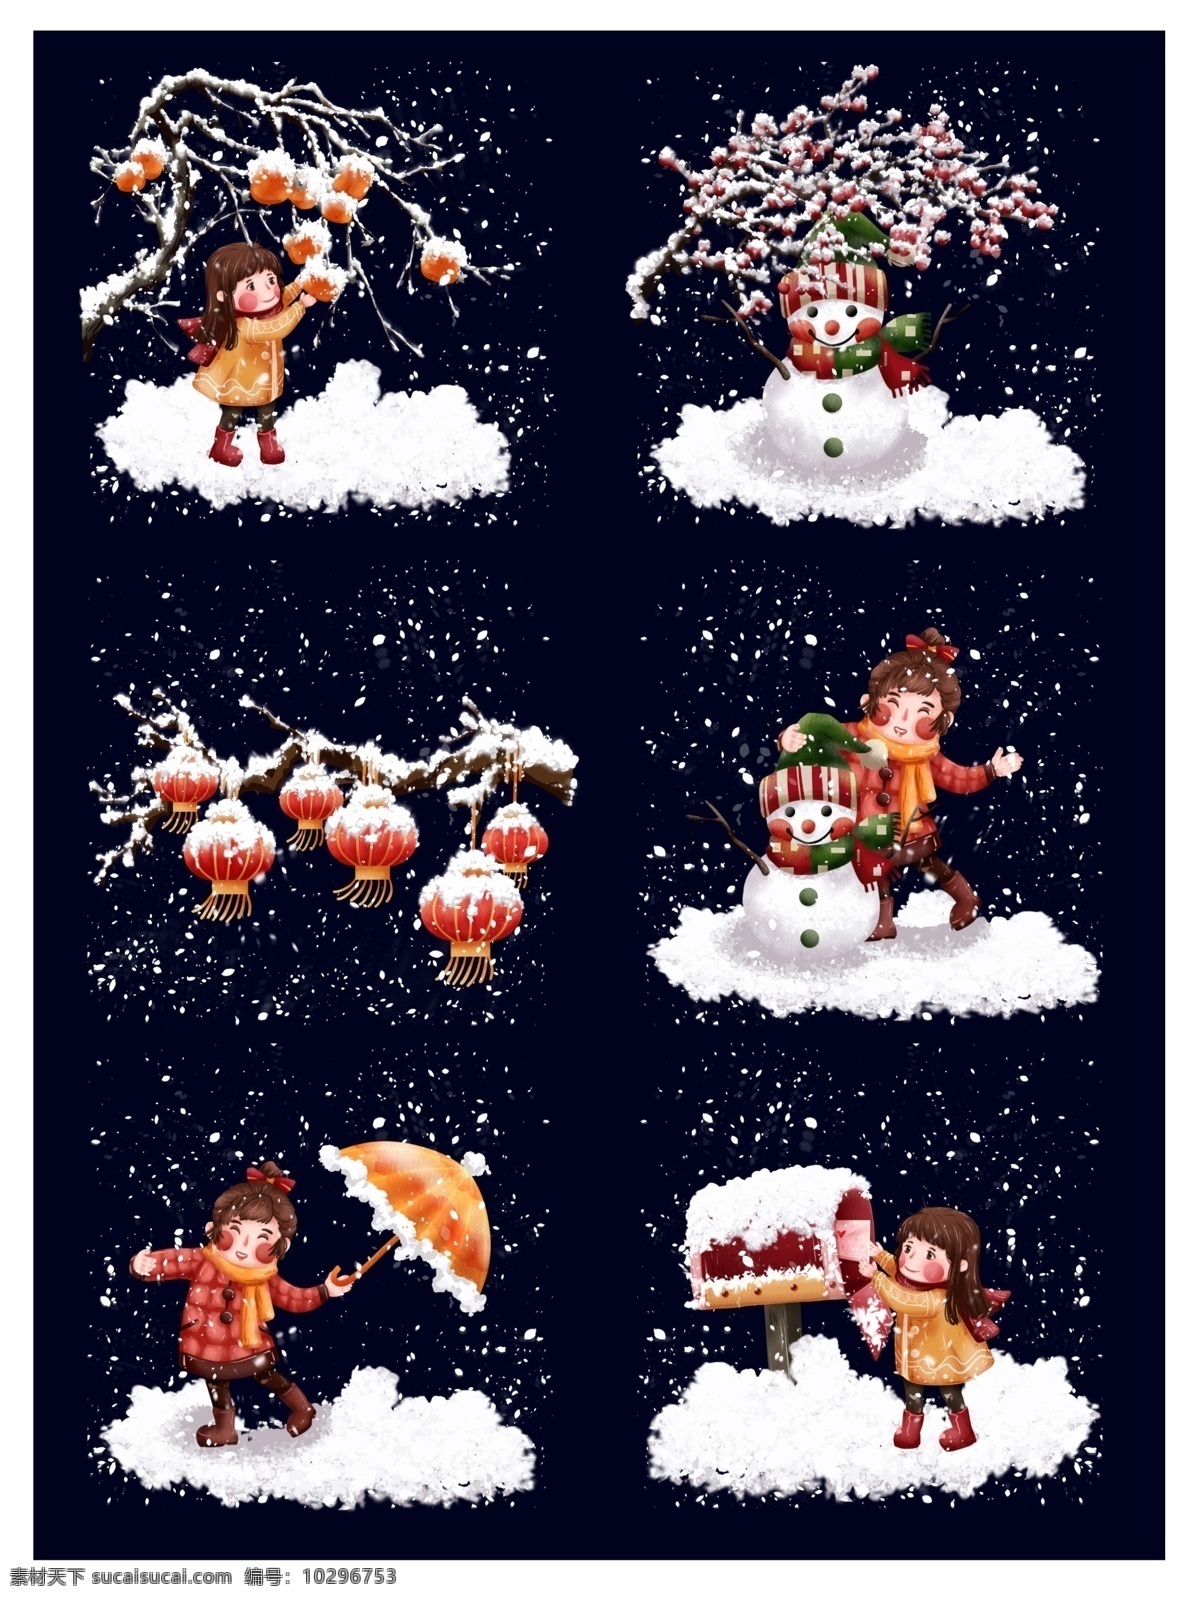 圣诞人物图片 圣诞节 下雪 卡通 快乐 冬天 人物图库